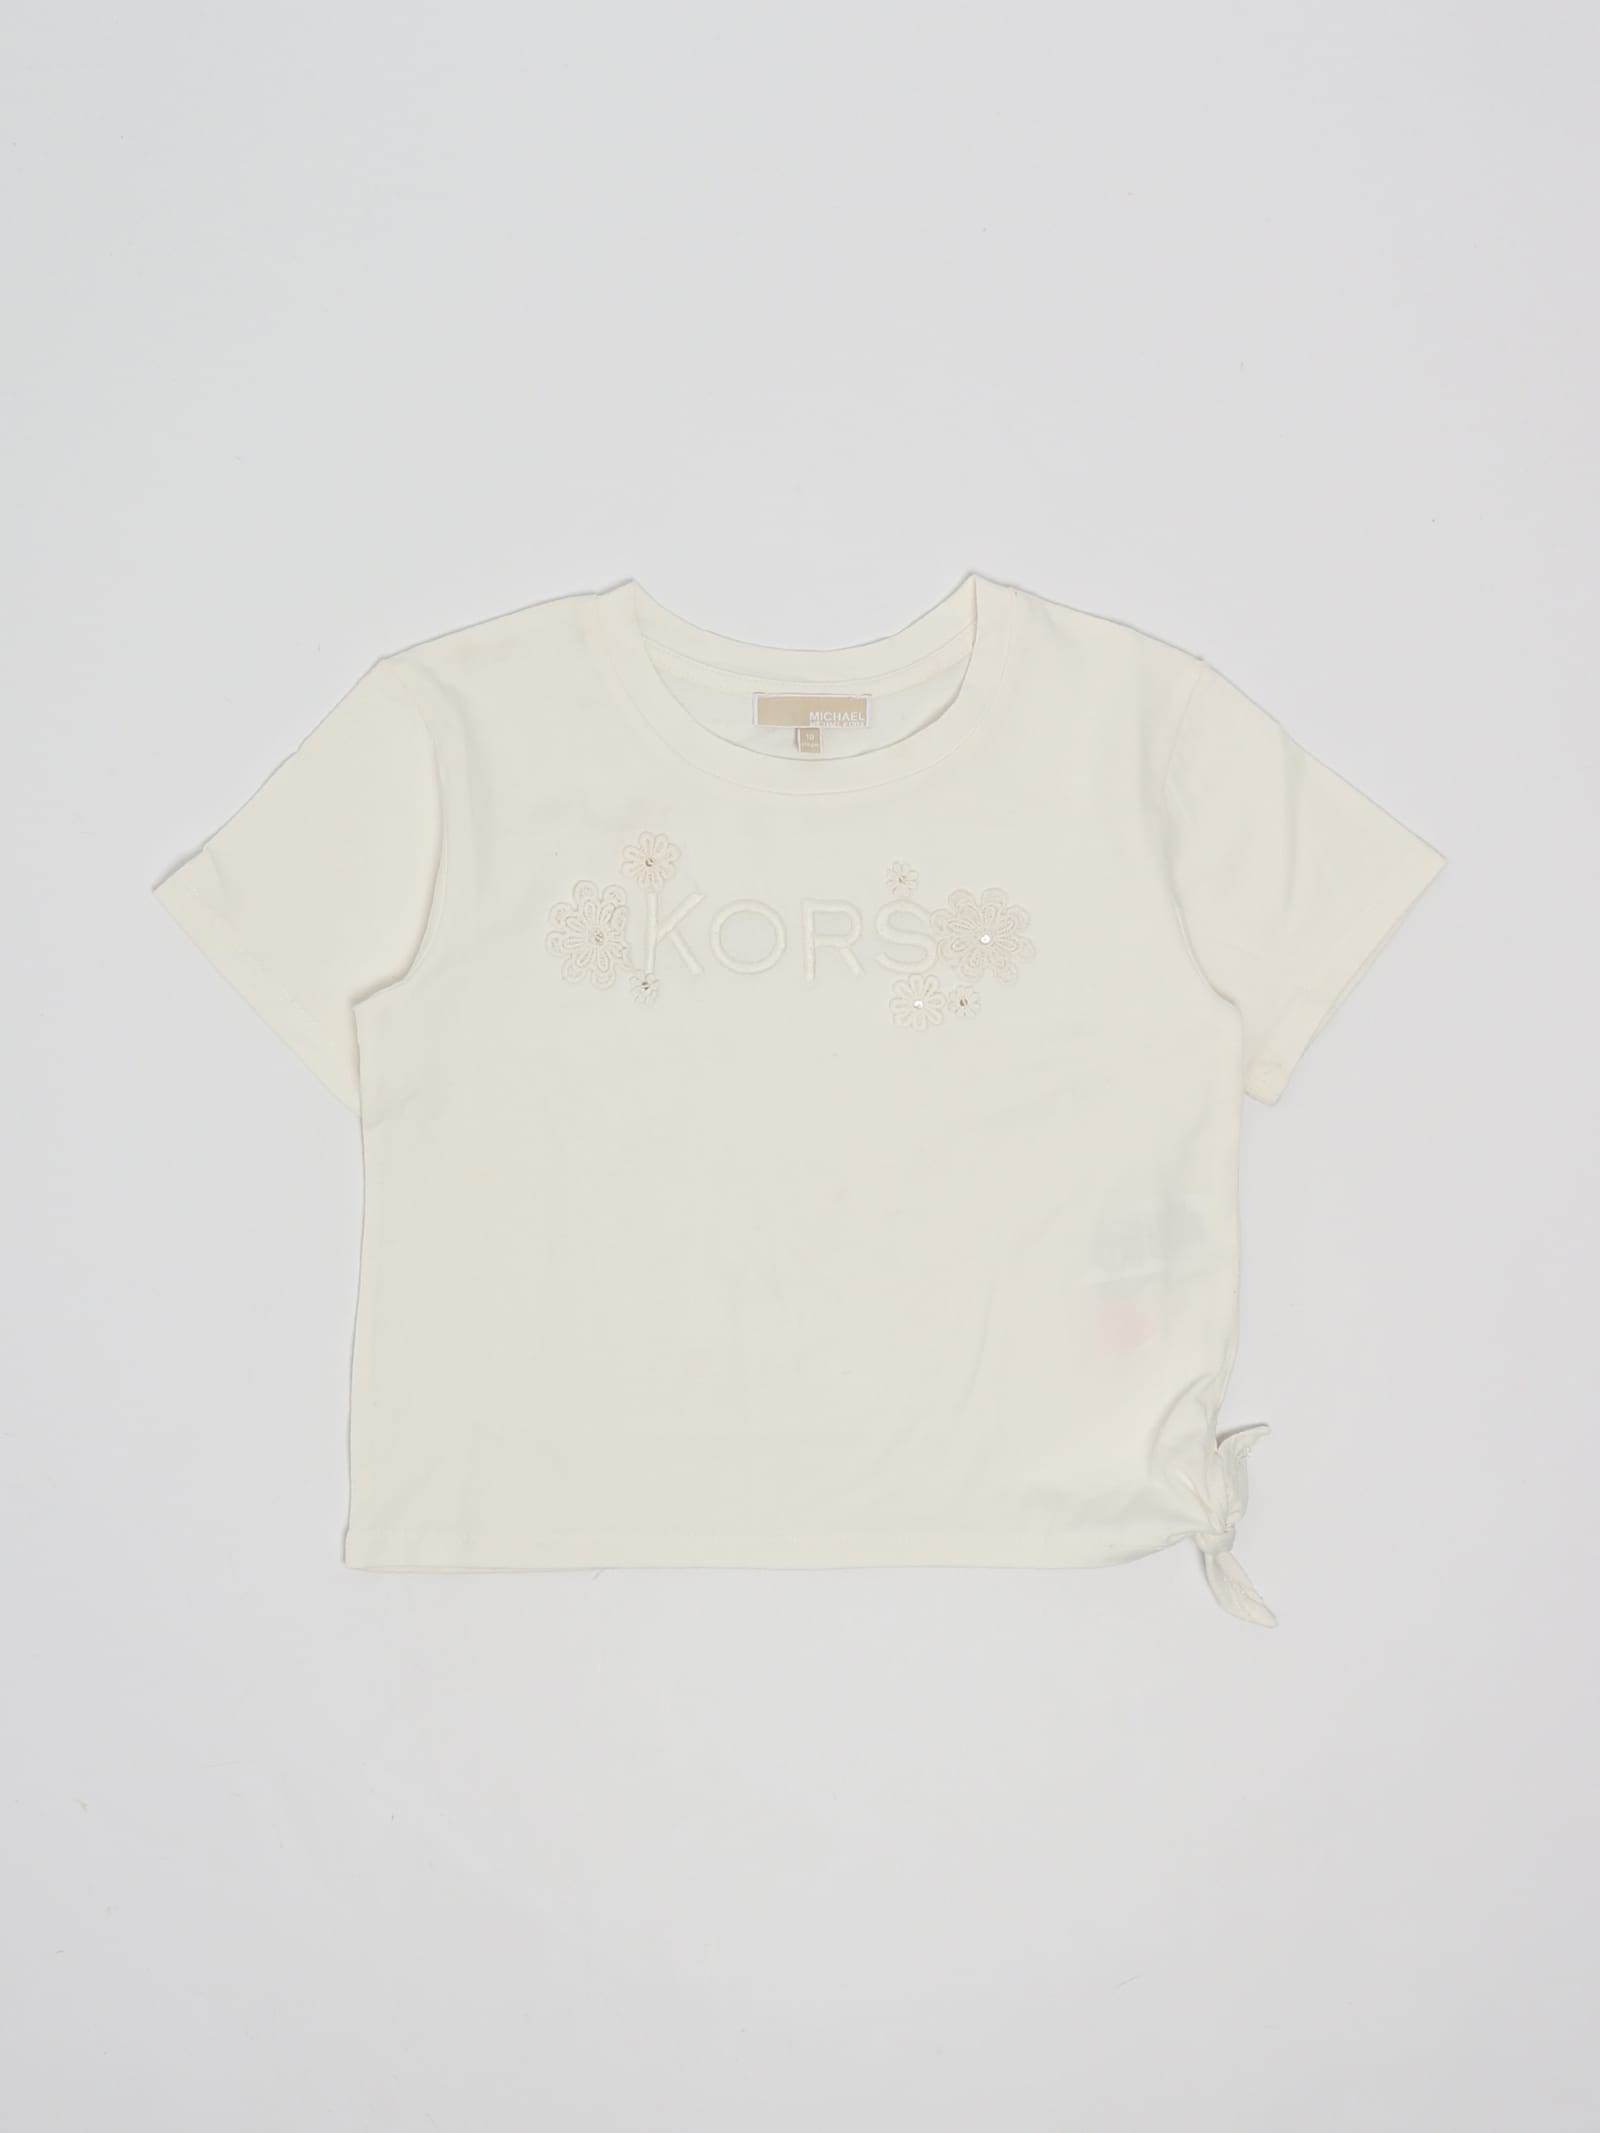 Michael Kors Kids' T-shirt T-shirt In Bianco Sporco